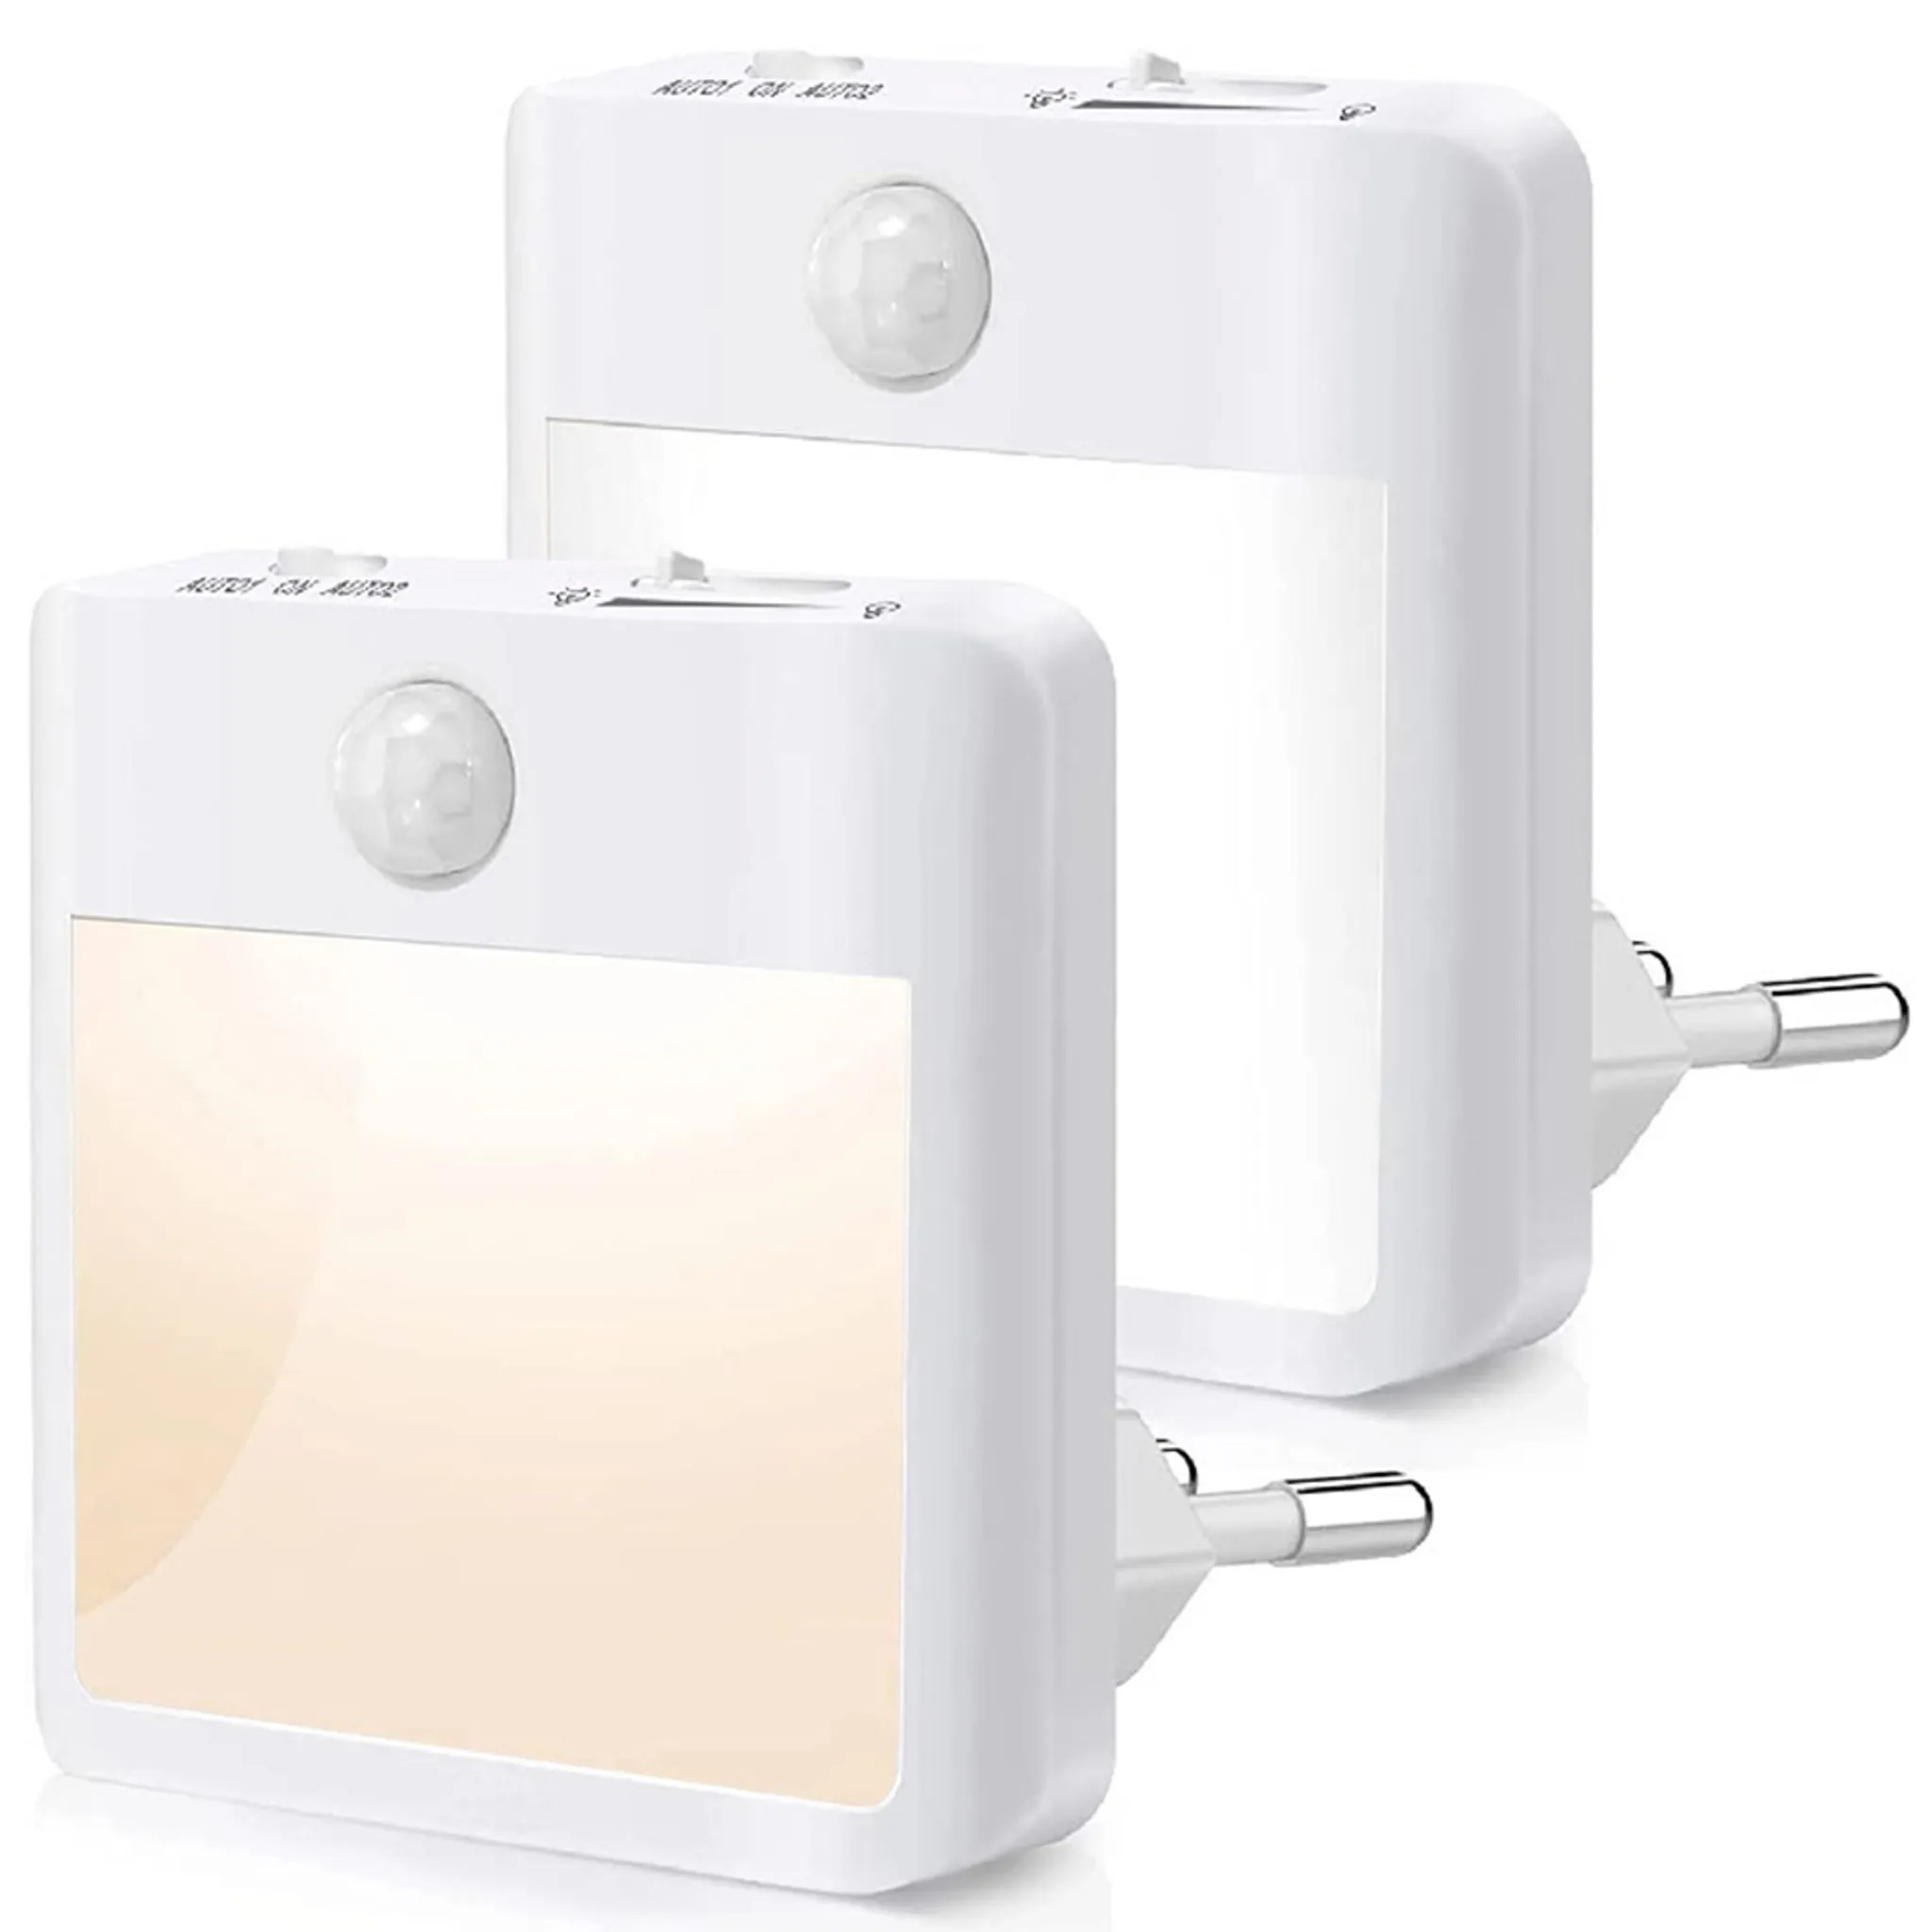 LED Orientierungsleuchte und Taschenlampe, 2-in-1 Funktion, aufladbare LED-Leuchte,  mit Bewegungsmelder, aufladbar über USB-C Anschluss